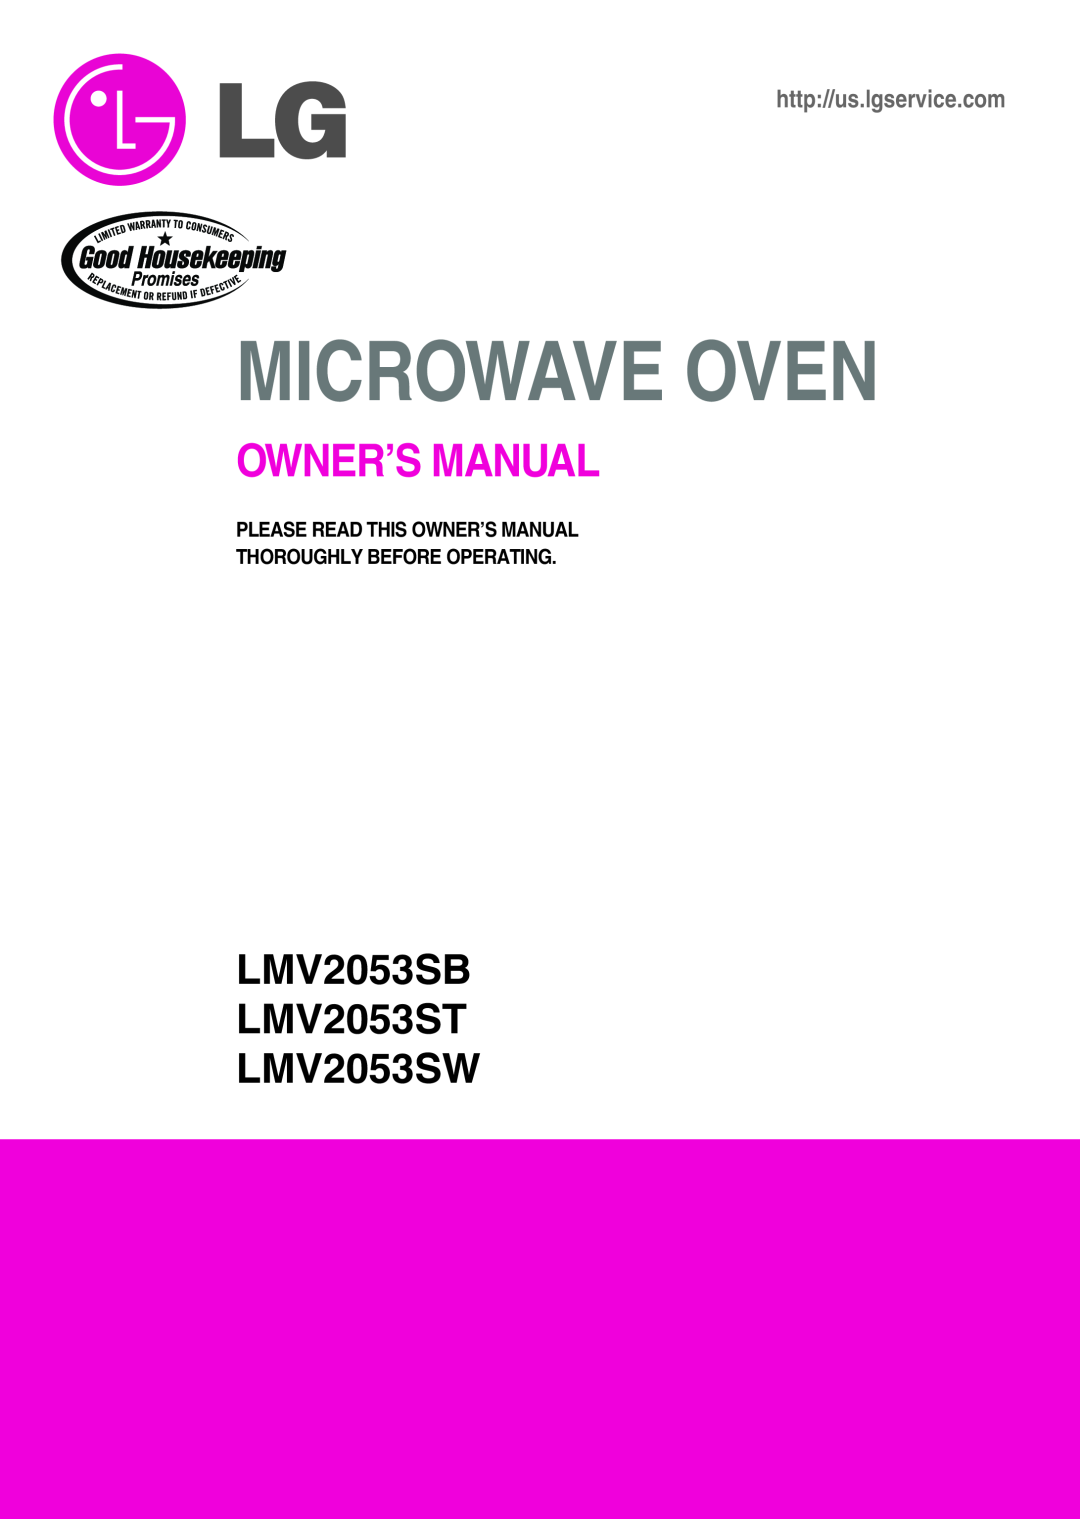 LG Electronics owner manual LMV2053SB LMV2053ST LMV2053SW, Microwave Oven, http//us.lgservice.com 